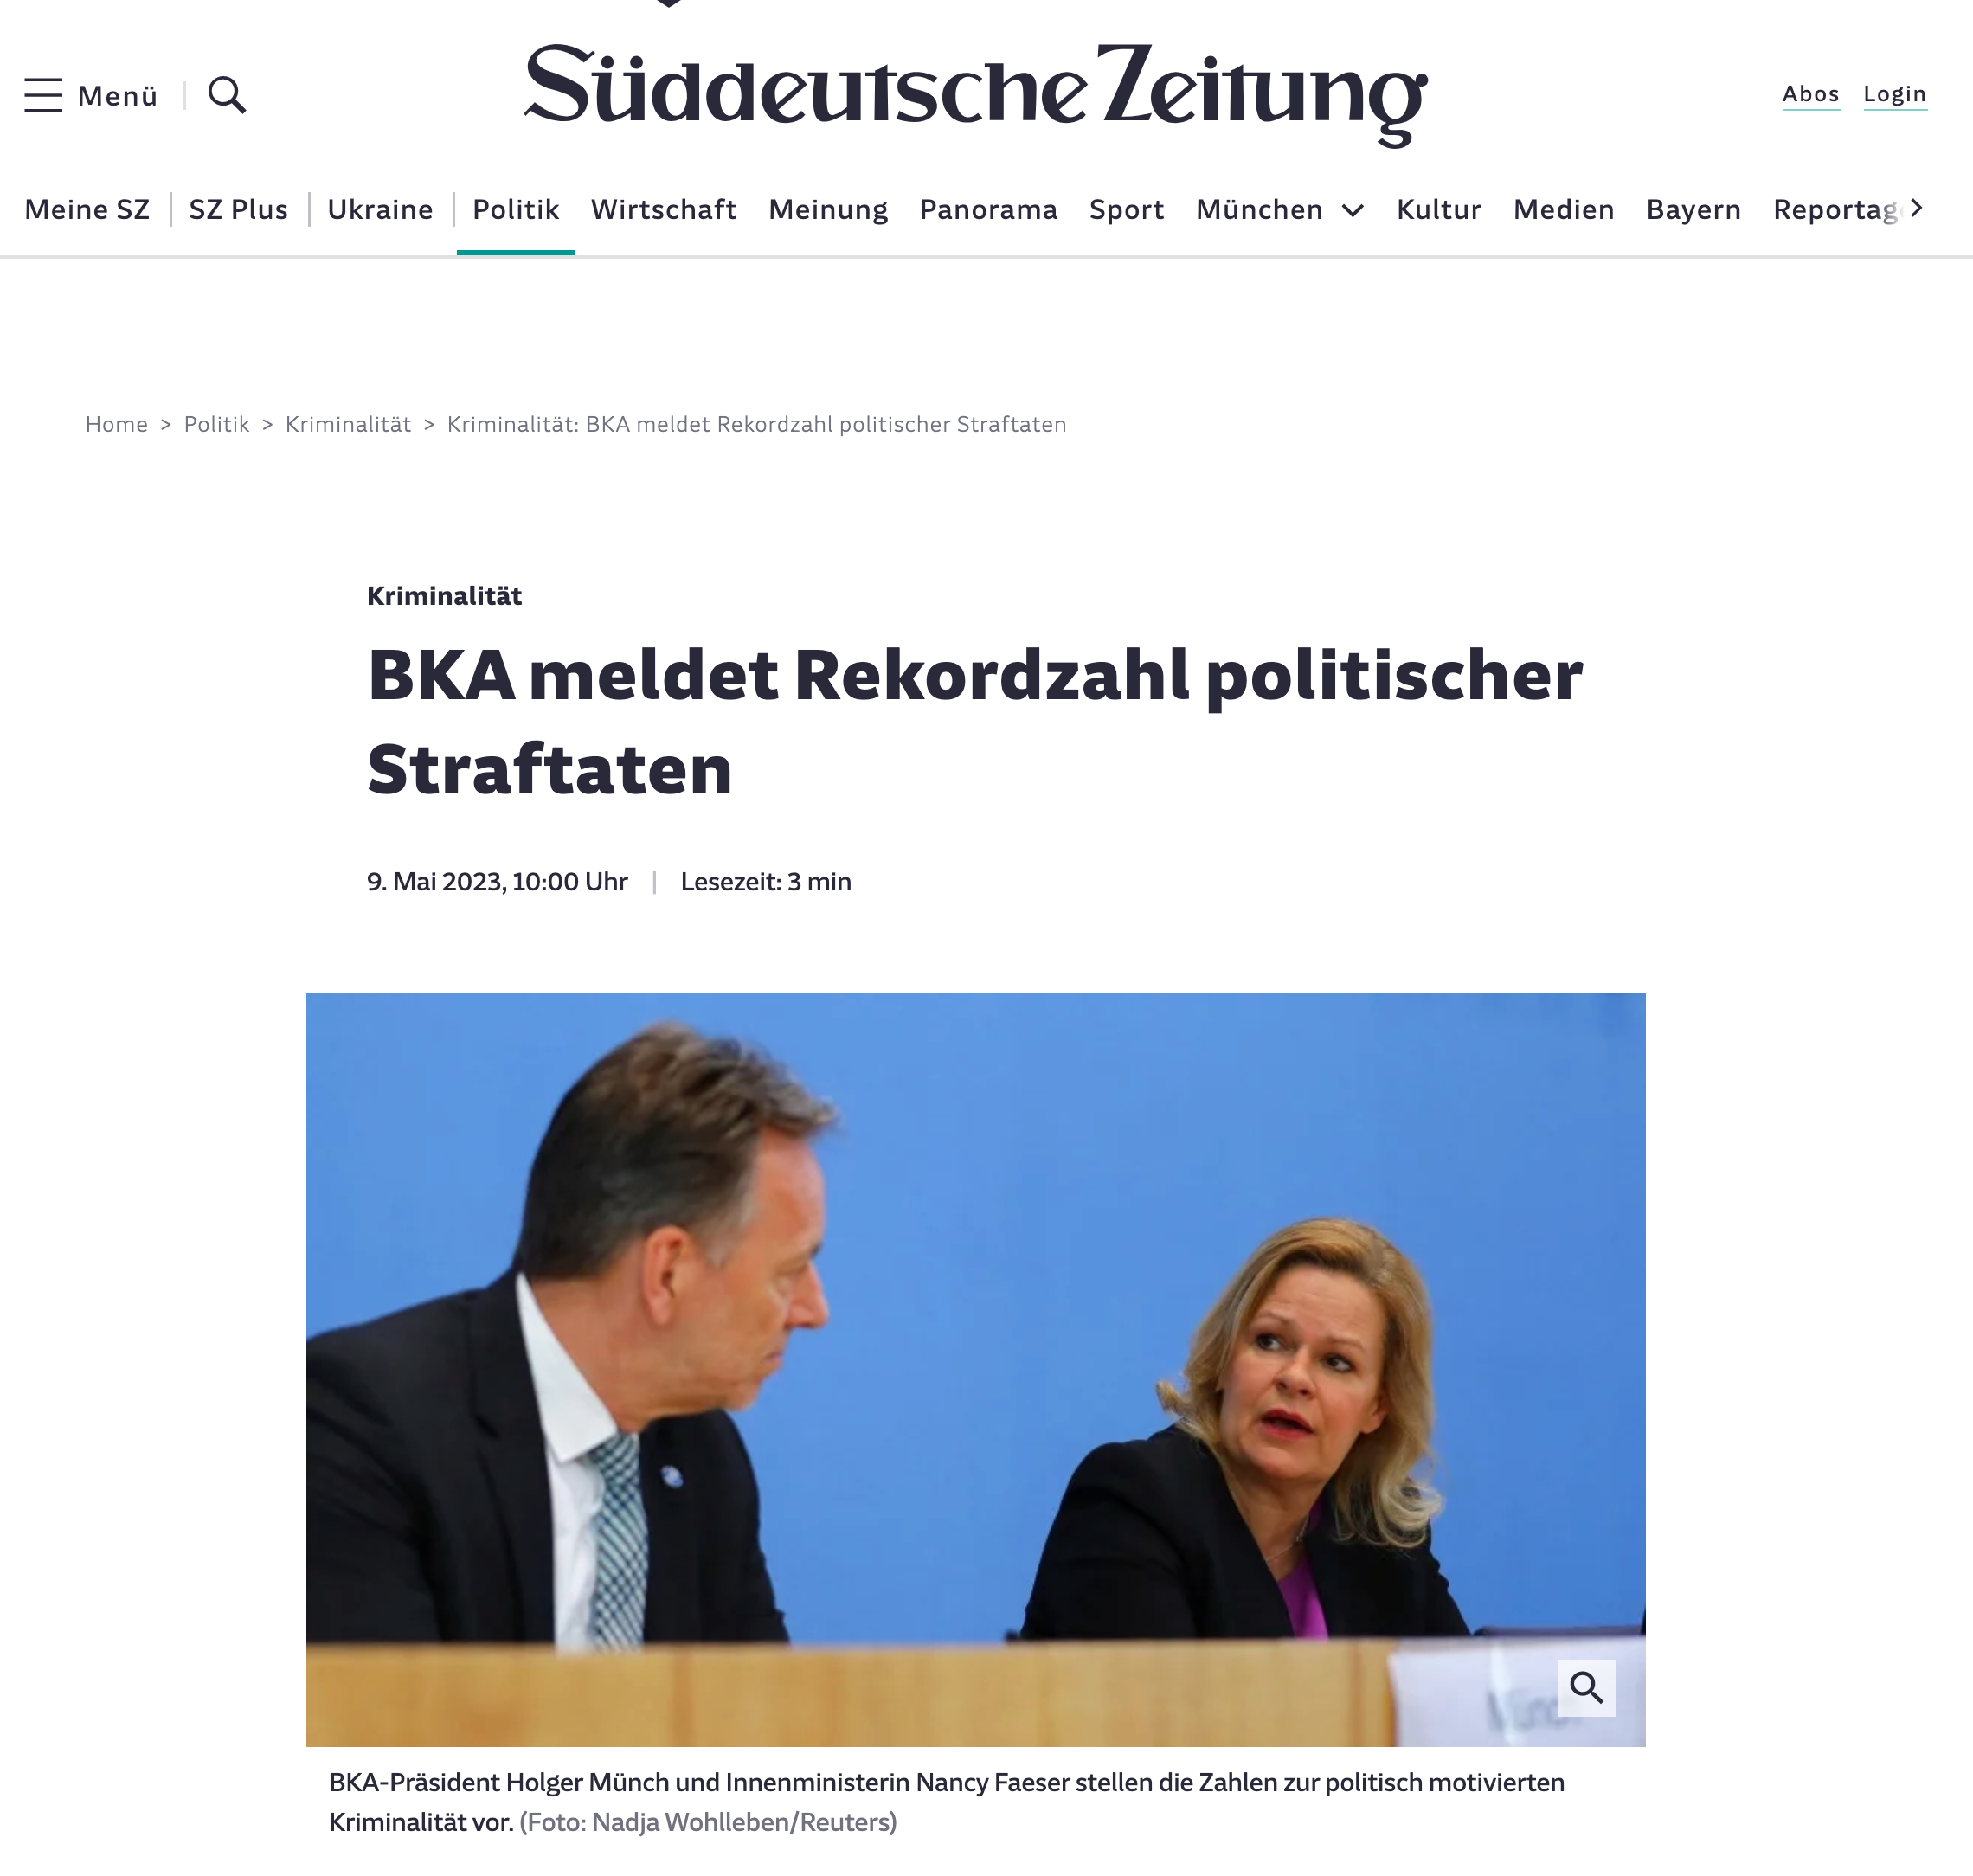 PUBLICATIONS - SZ - SUEDDEUTSCHE ZEITUNG (DEU), May 2023